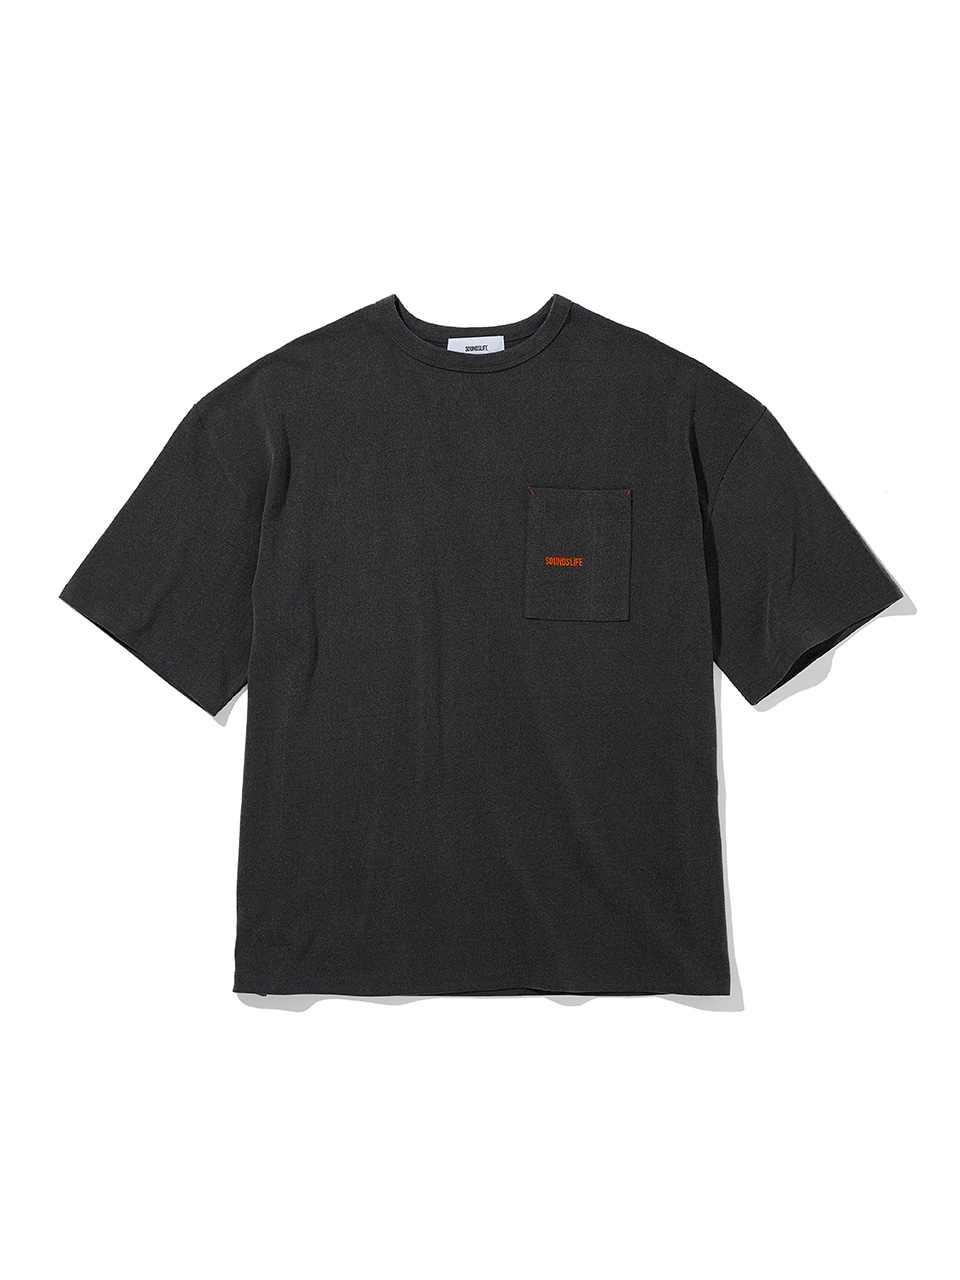 SOUNDSLIFE - Pigment Logo Pocket T-Shirt Charcoal